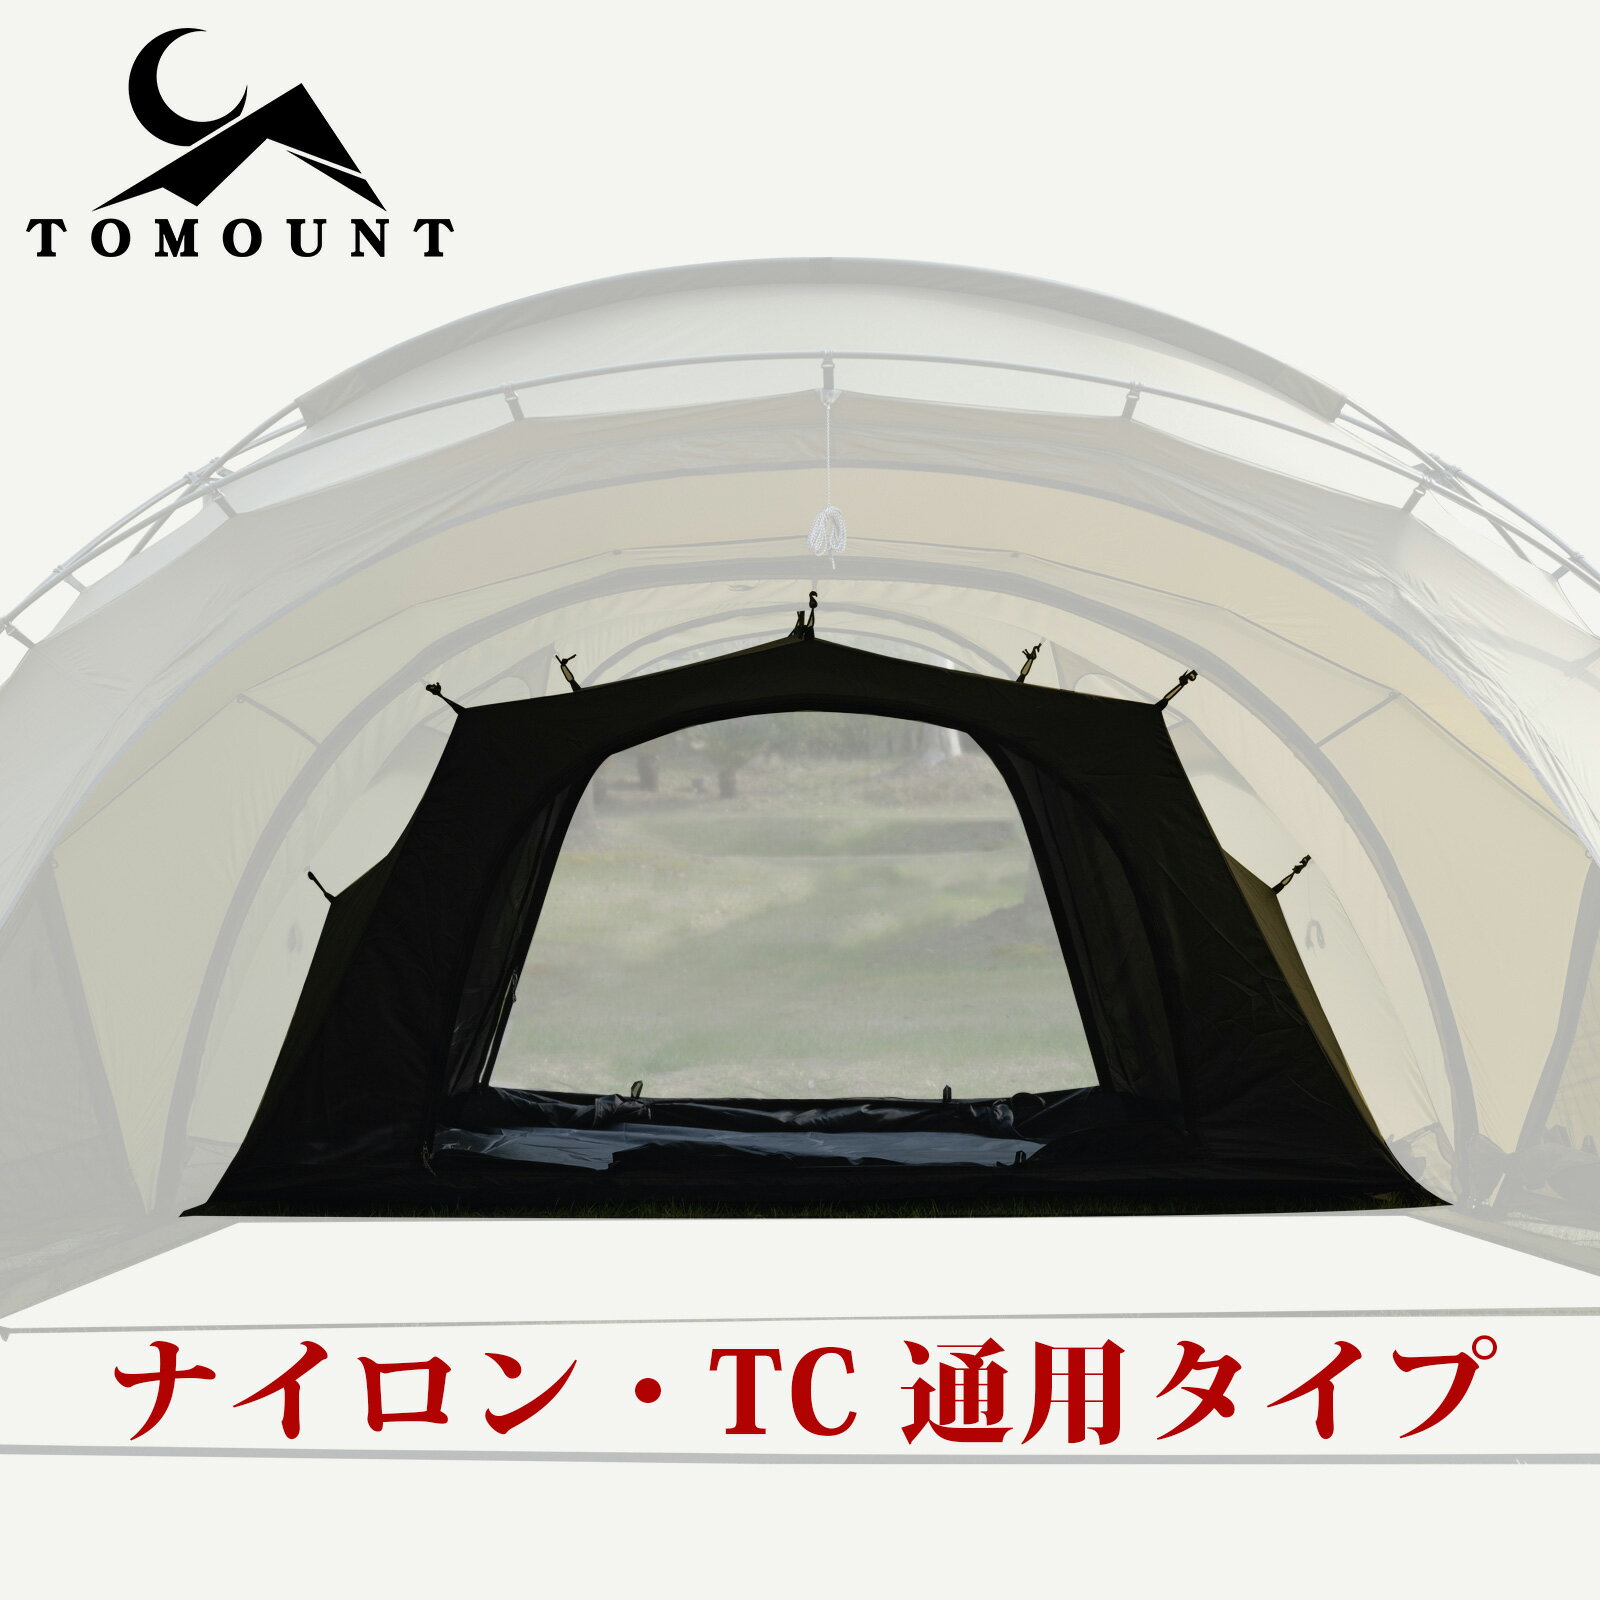 TOMOUNT G moon tent G moon-TC 拡張テント 専用インナーテント